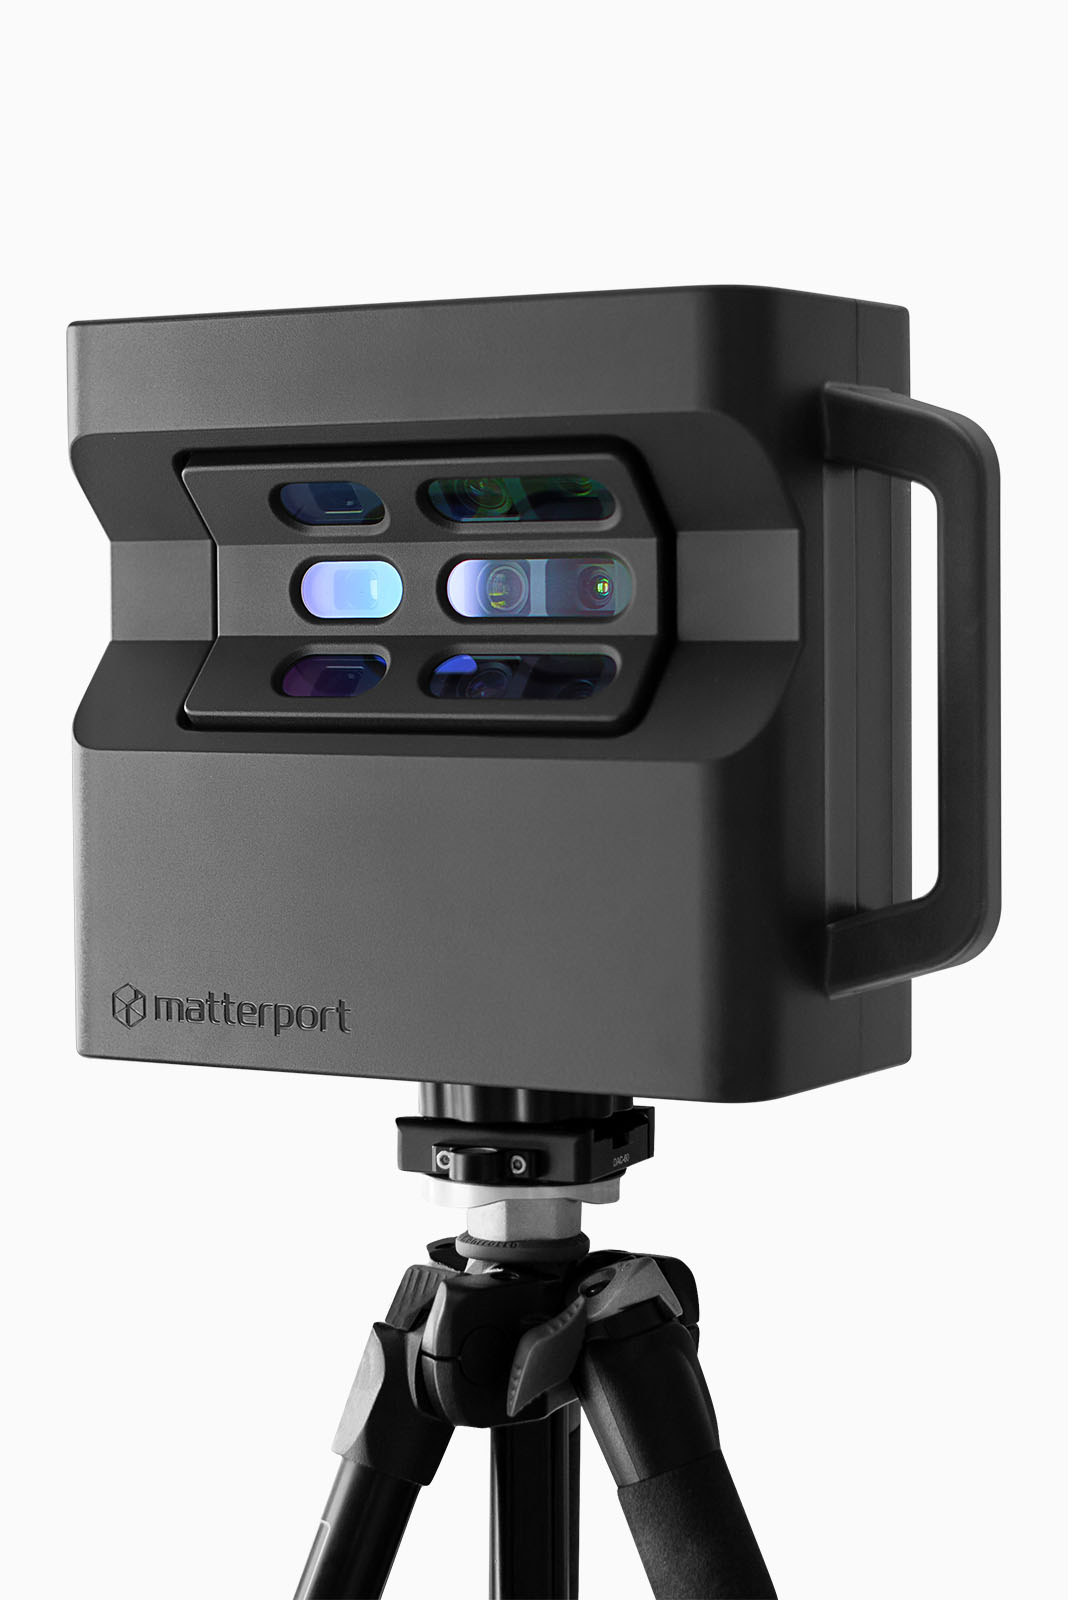 matterport camera scanner